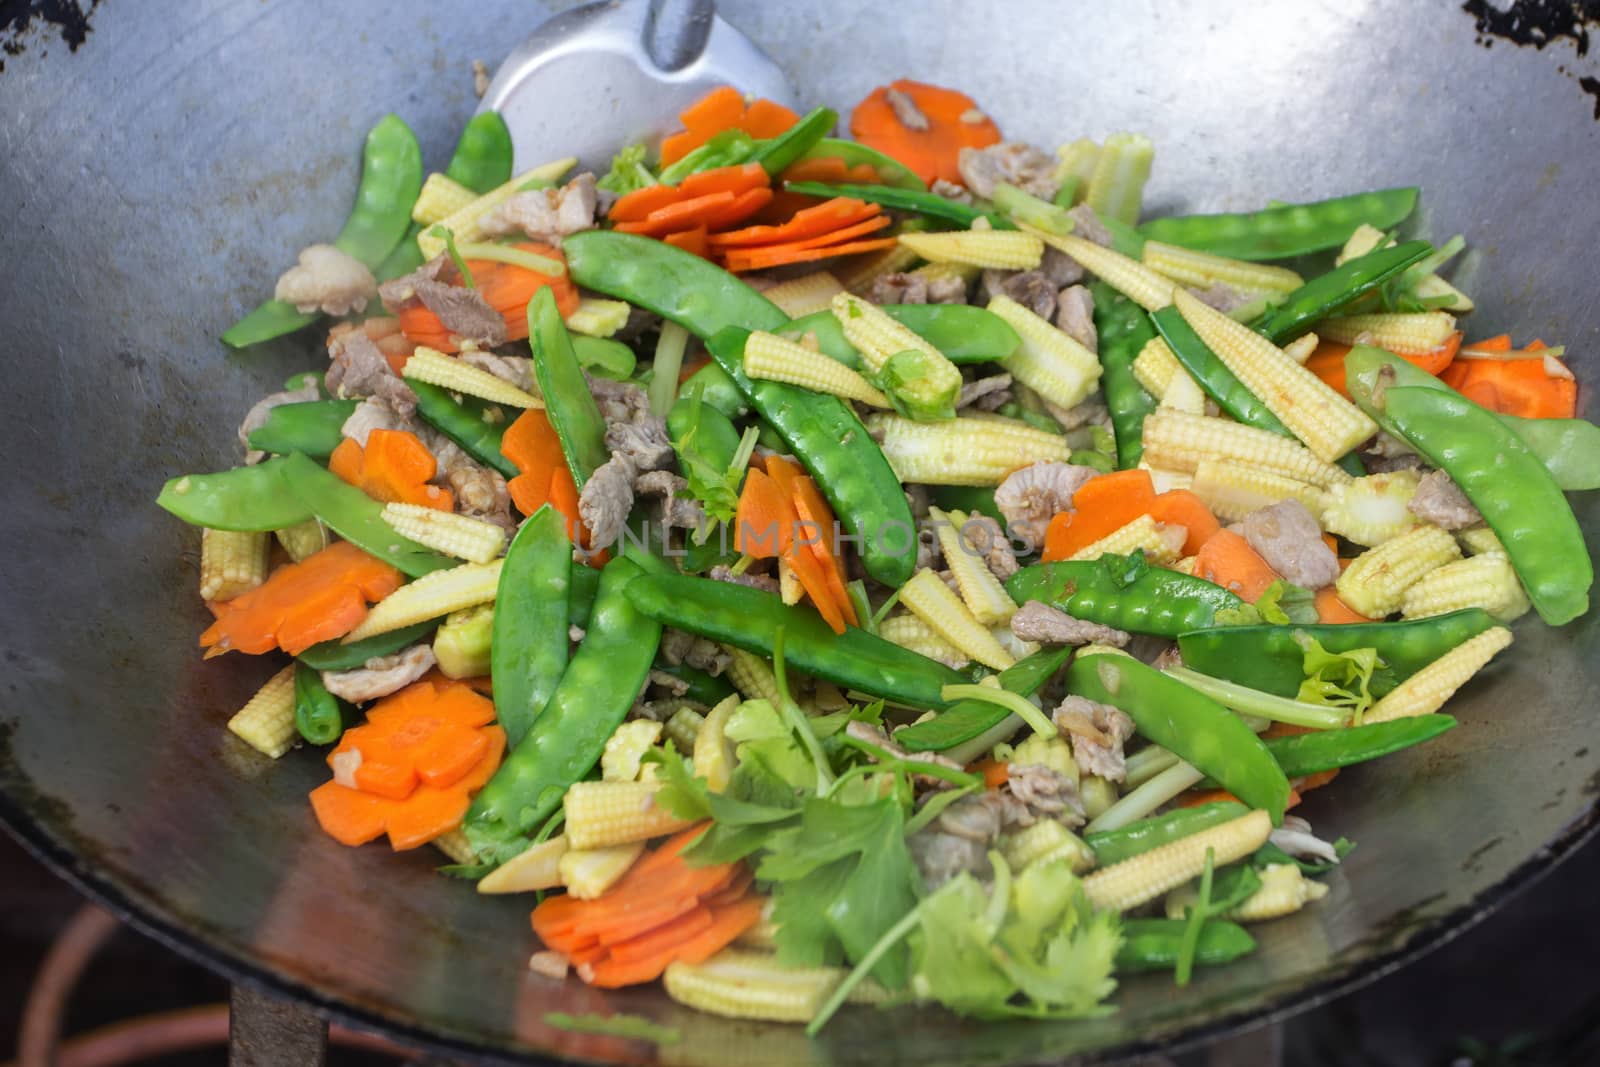 stir fried vegetables with pork by wyoosumran